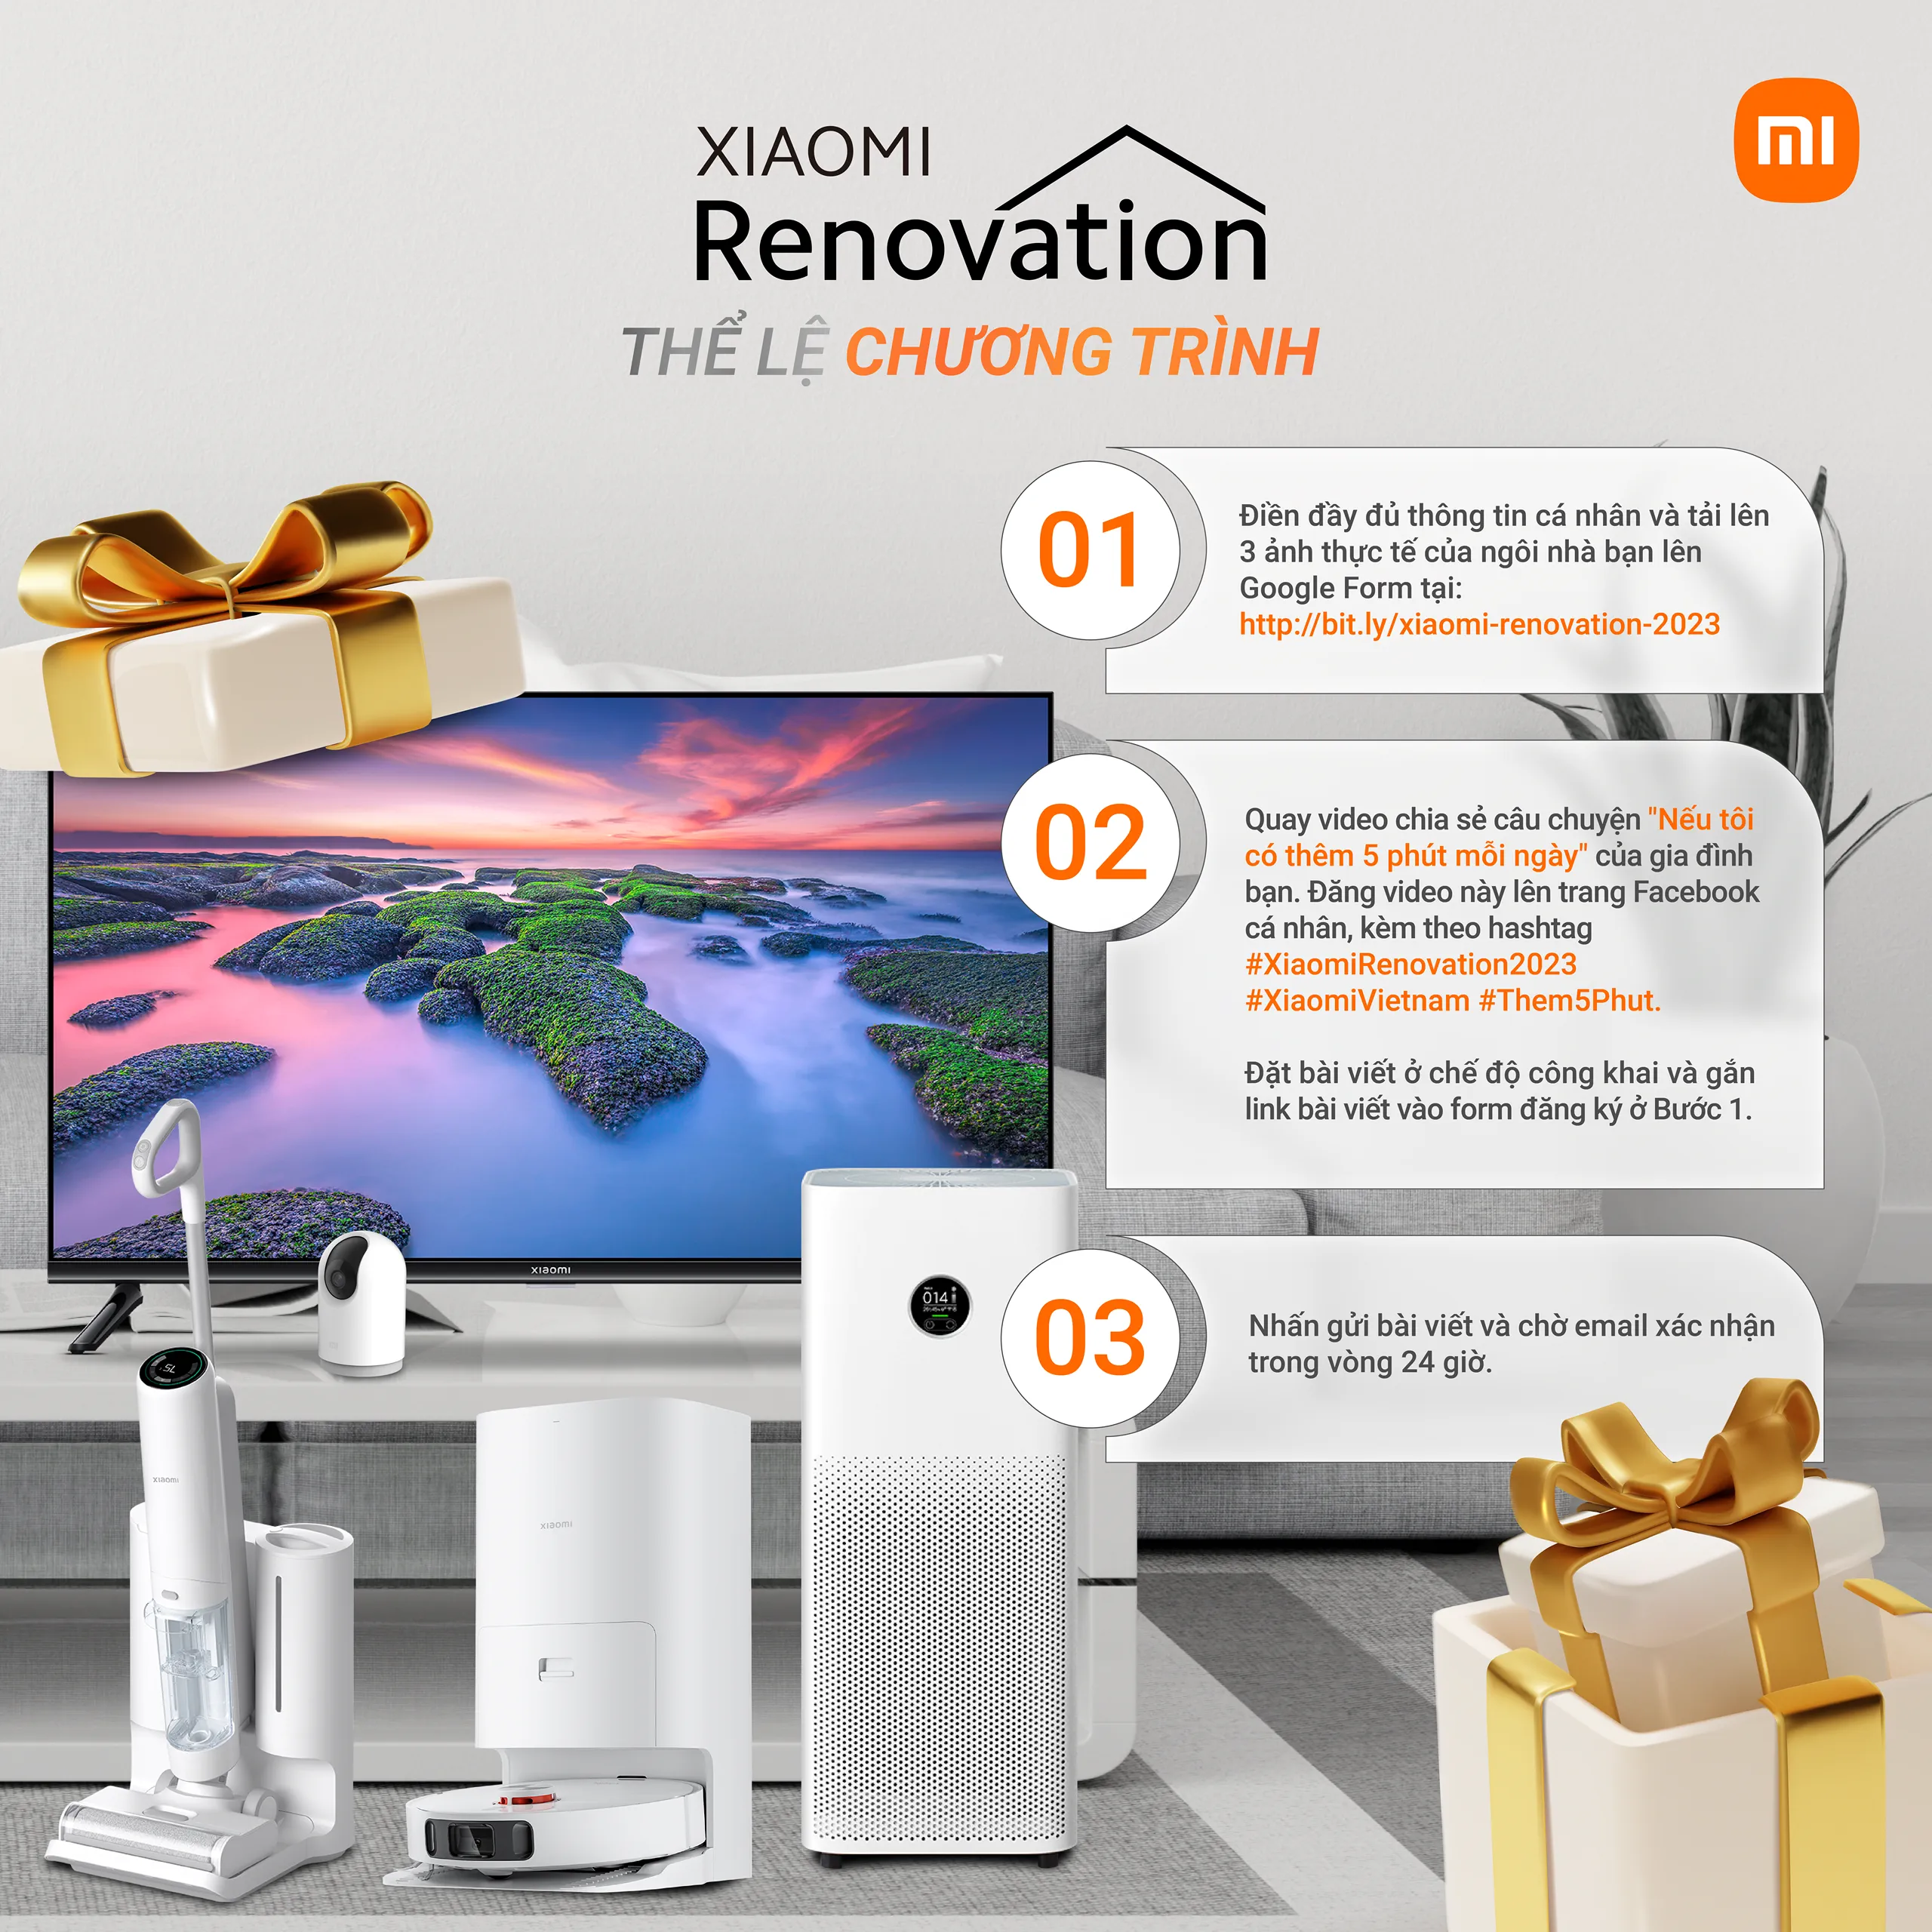 Xiaomi Renovation 2023 trở lại với thông điệp “Nâng tầm chất sống, Trọn vẹn yêu thương”